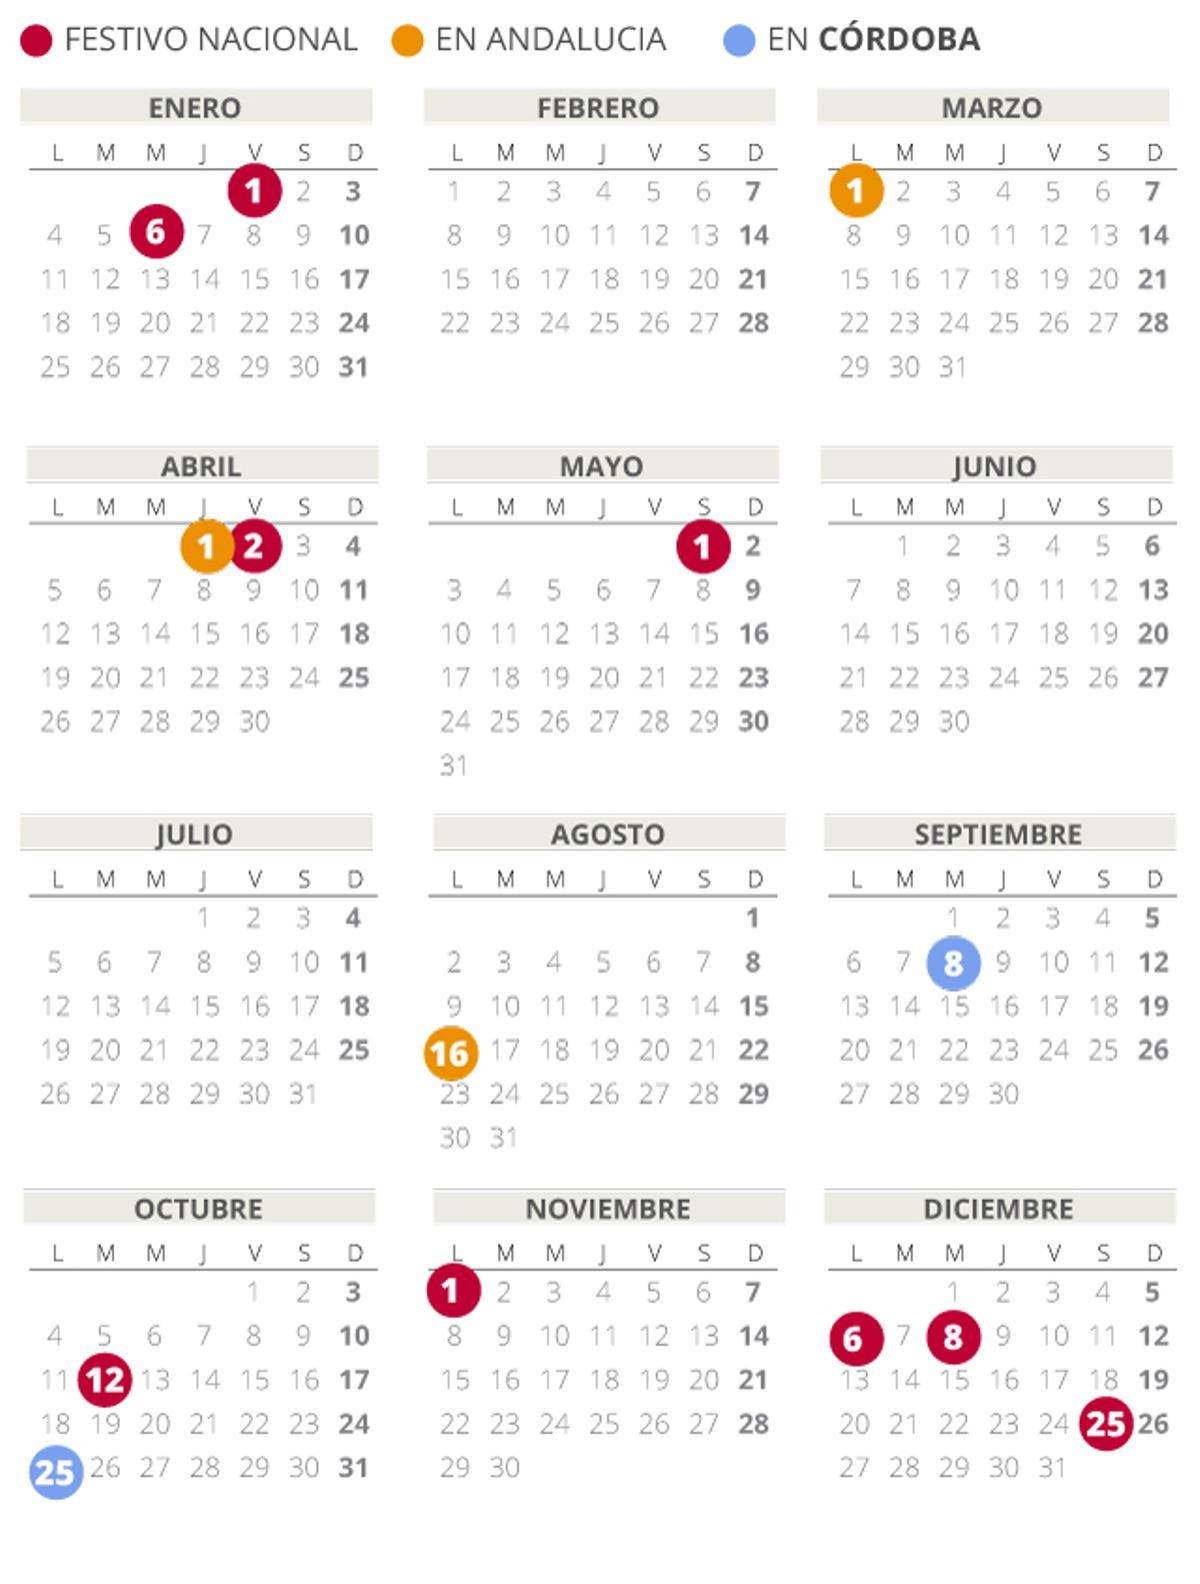 Calendario laboral de Córdoba del 2021 (con todos los festivos)